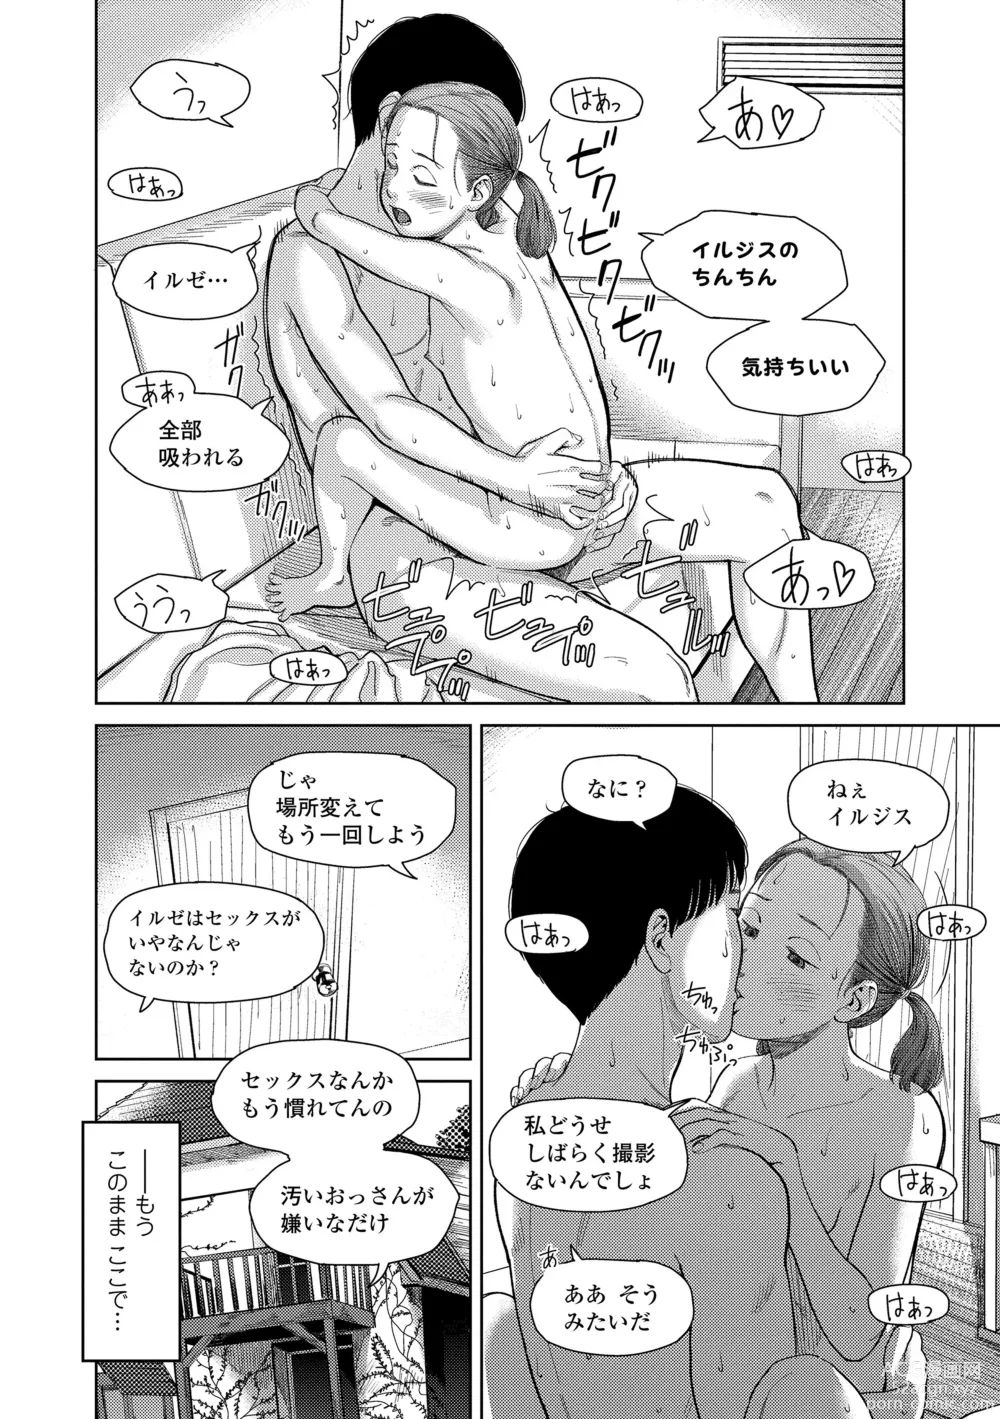 Page 188 of manga Over Kill